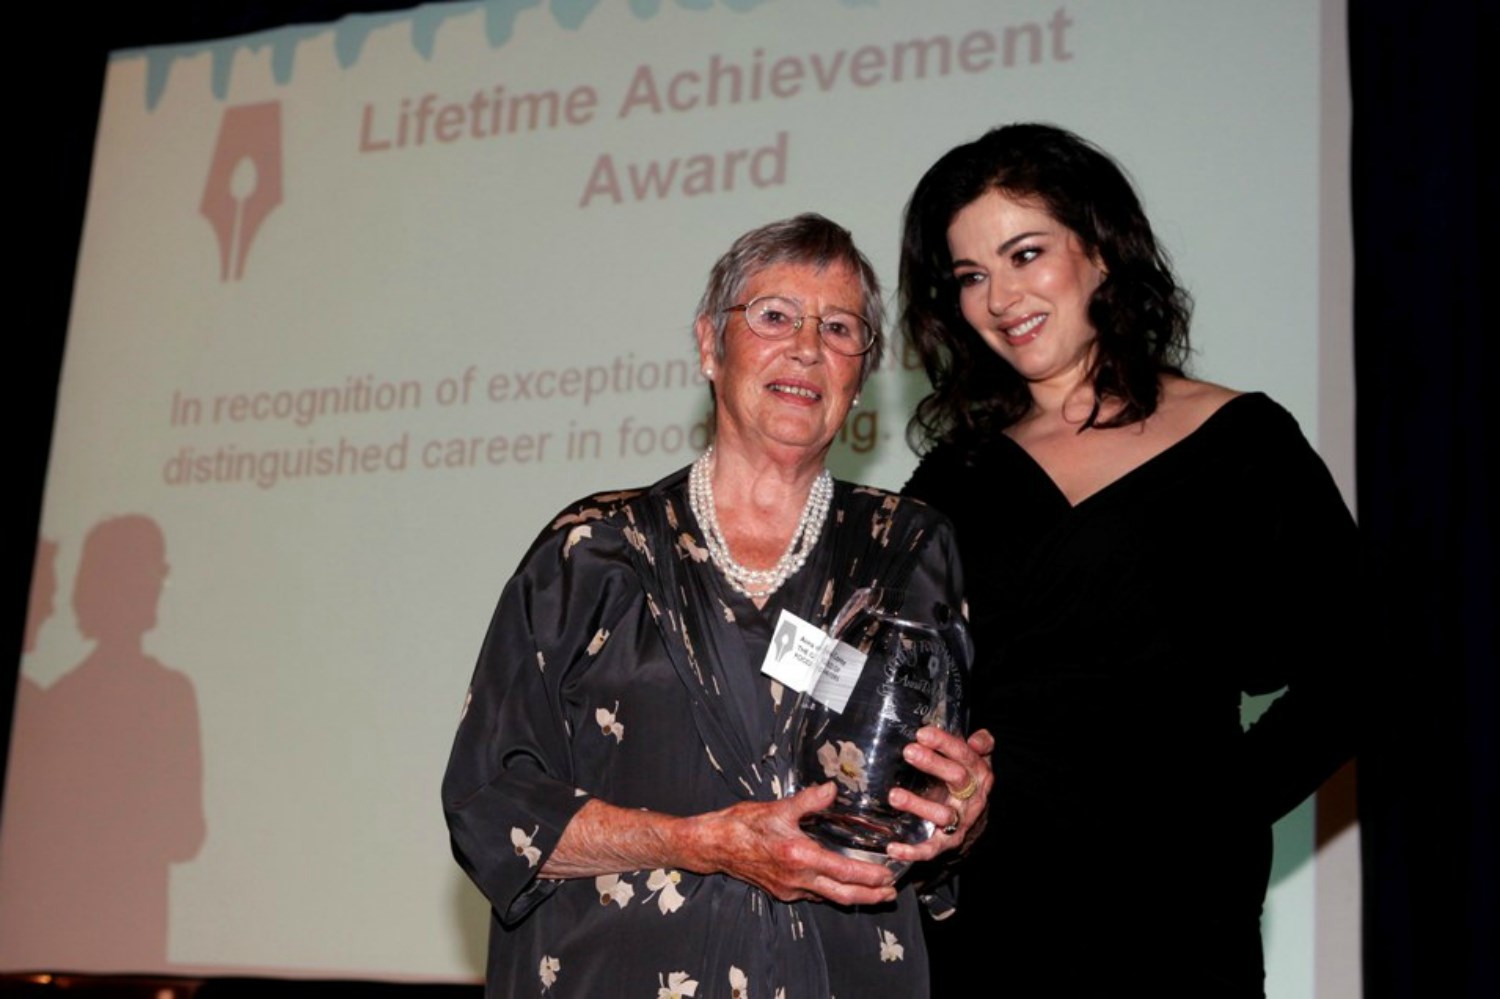 Anna del Conte receiving her Lifetime Achievement Award from Nigella Lawson